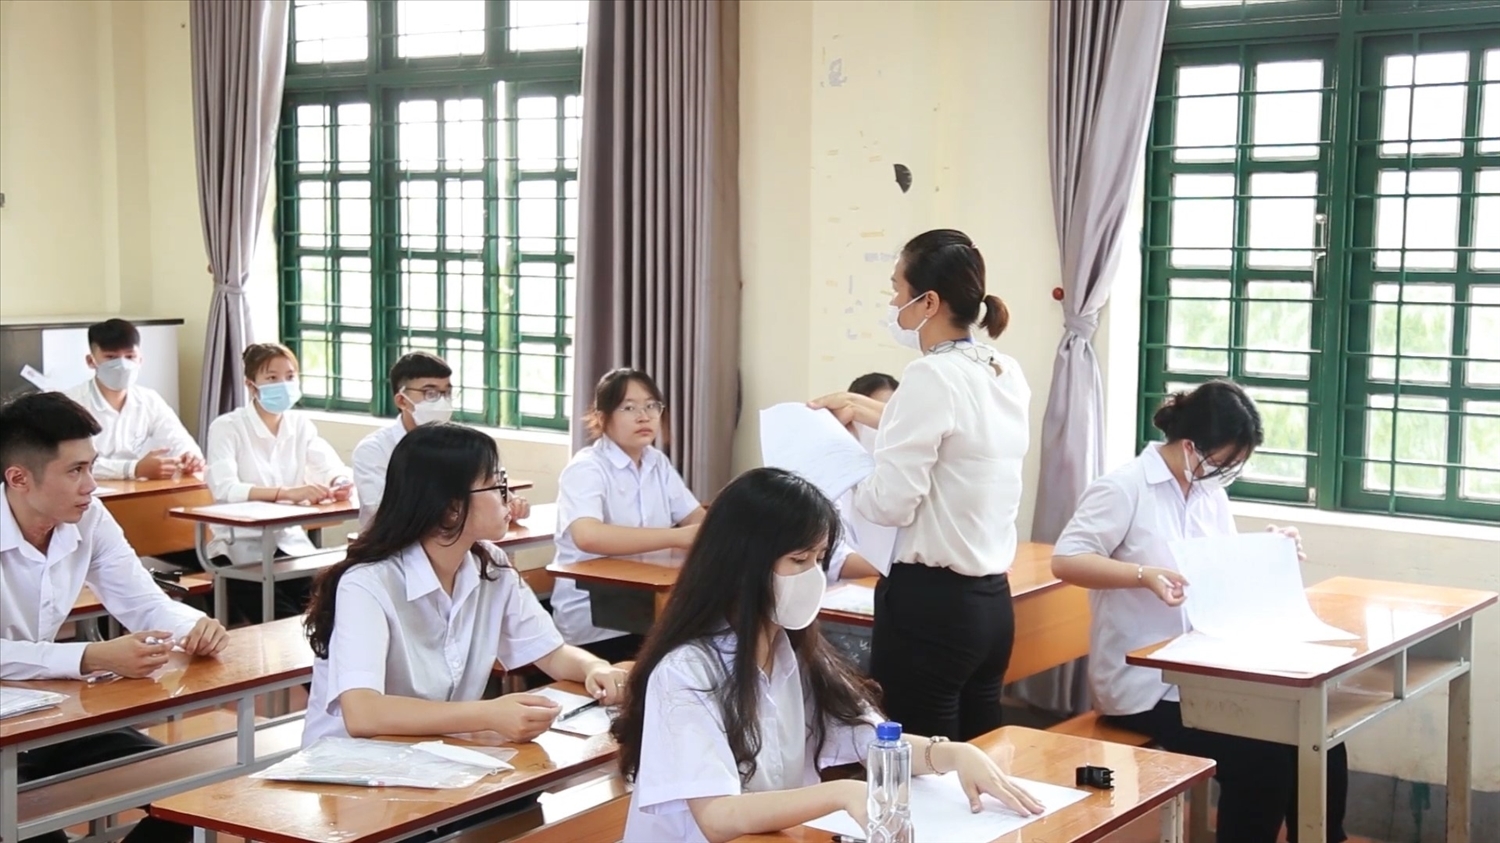 Trong buổi sáng thi môn Ngữ văn, trên địa bàn tỉnh Lào Cai không có thí sinh vi phạm quy chế thi